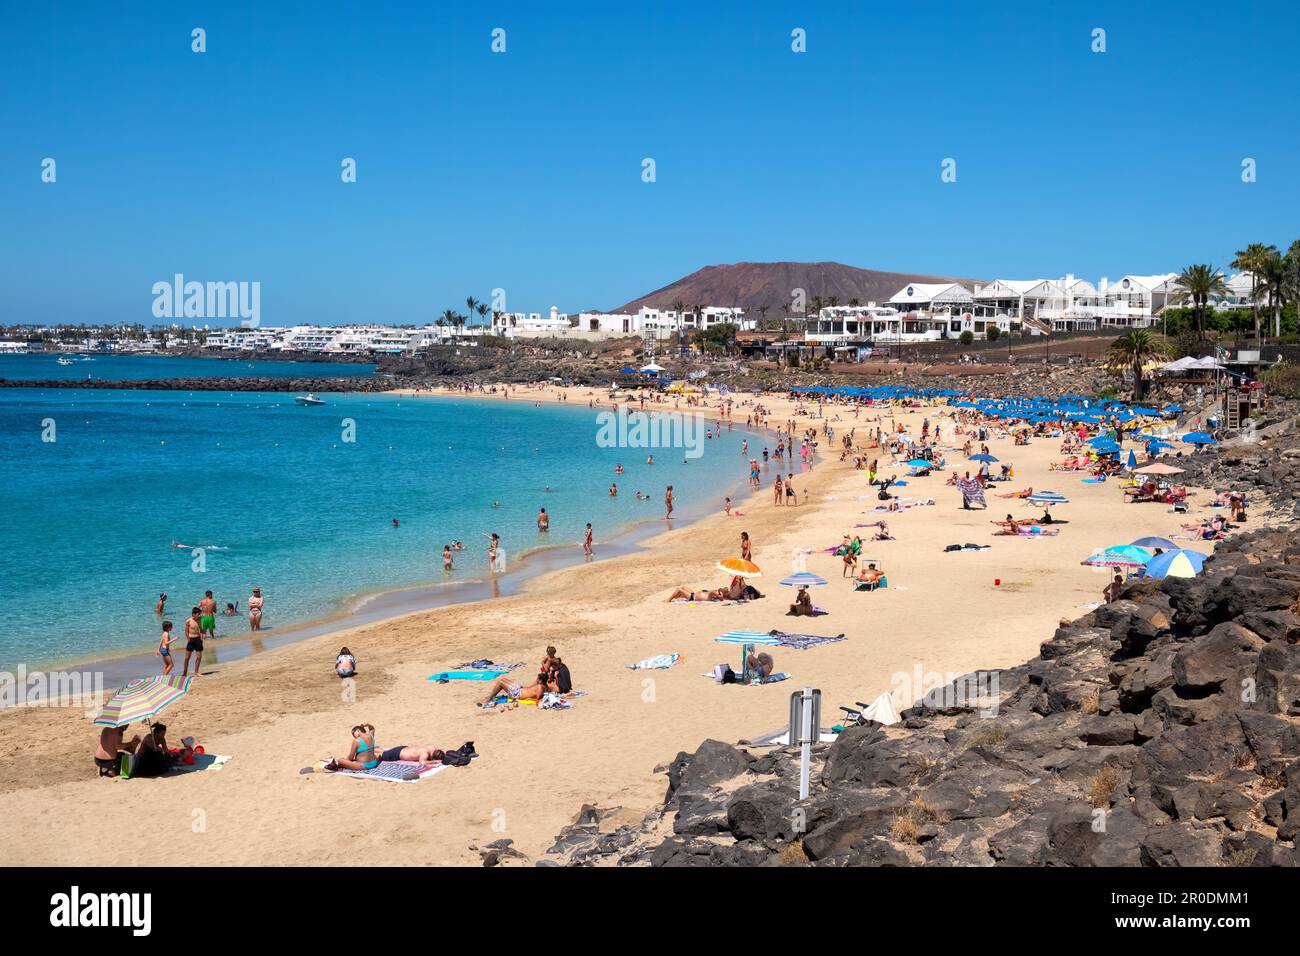 Una vista de Playa Dorada, Playa Blanca, Lanzarote. Es un día cálido y soleado con turistas disfrutando del sol en una playa dorada Foto de stock